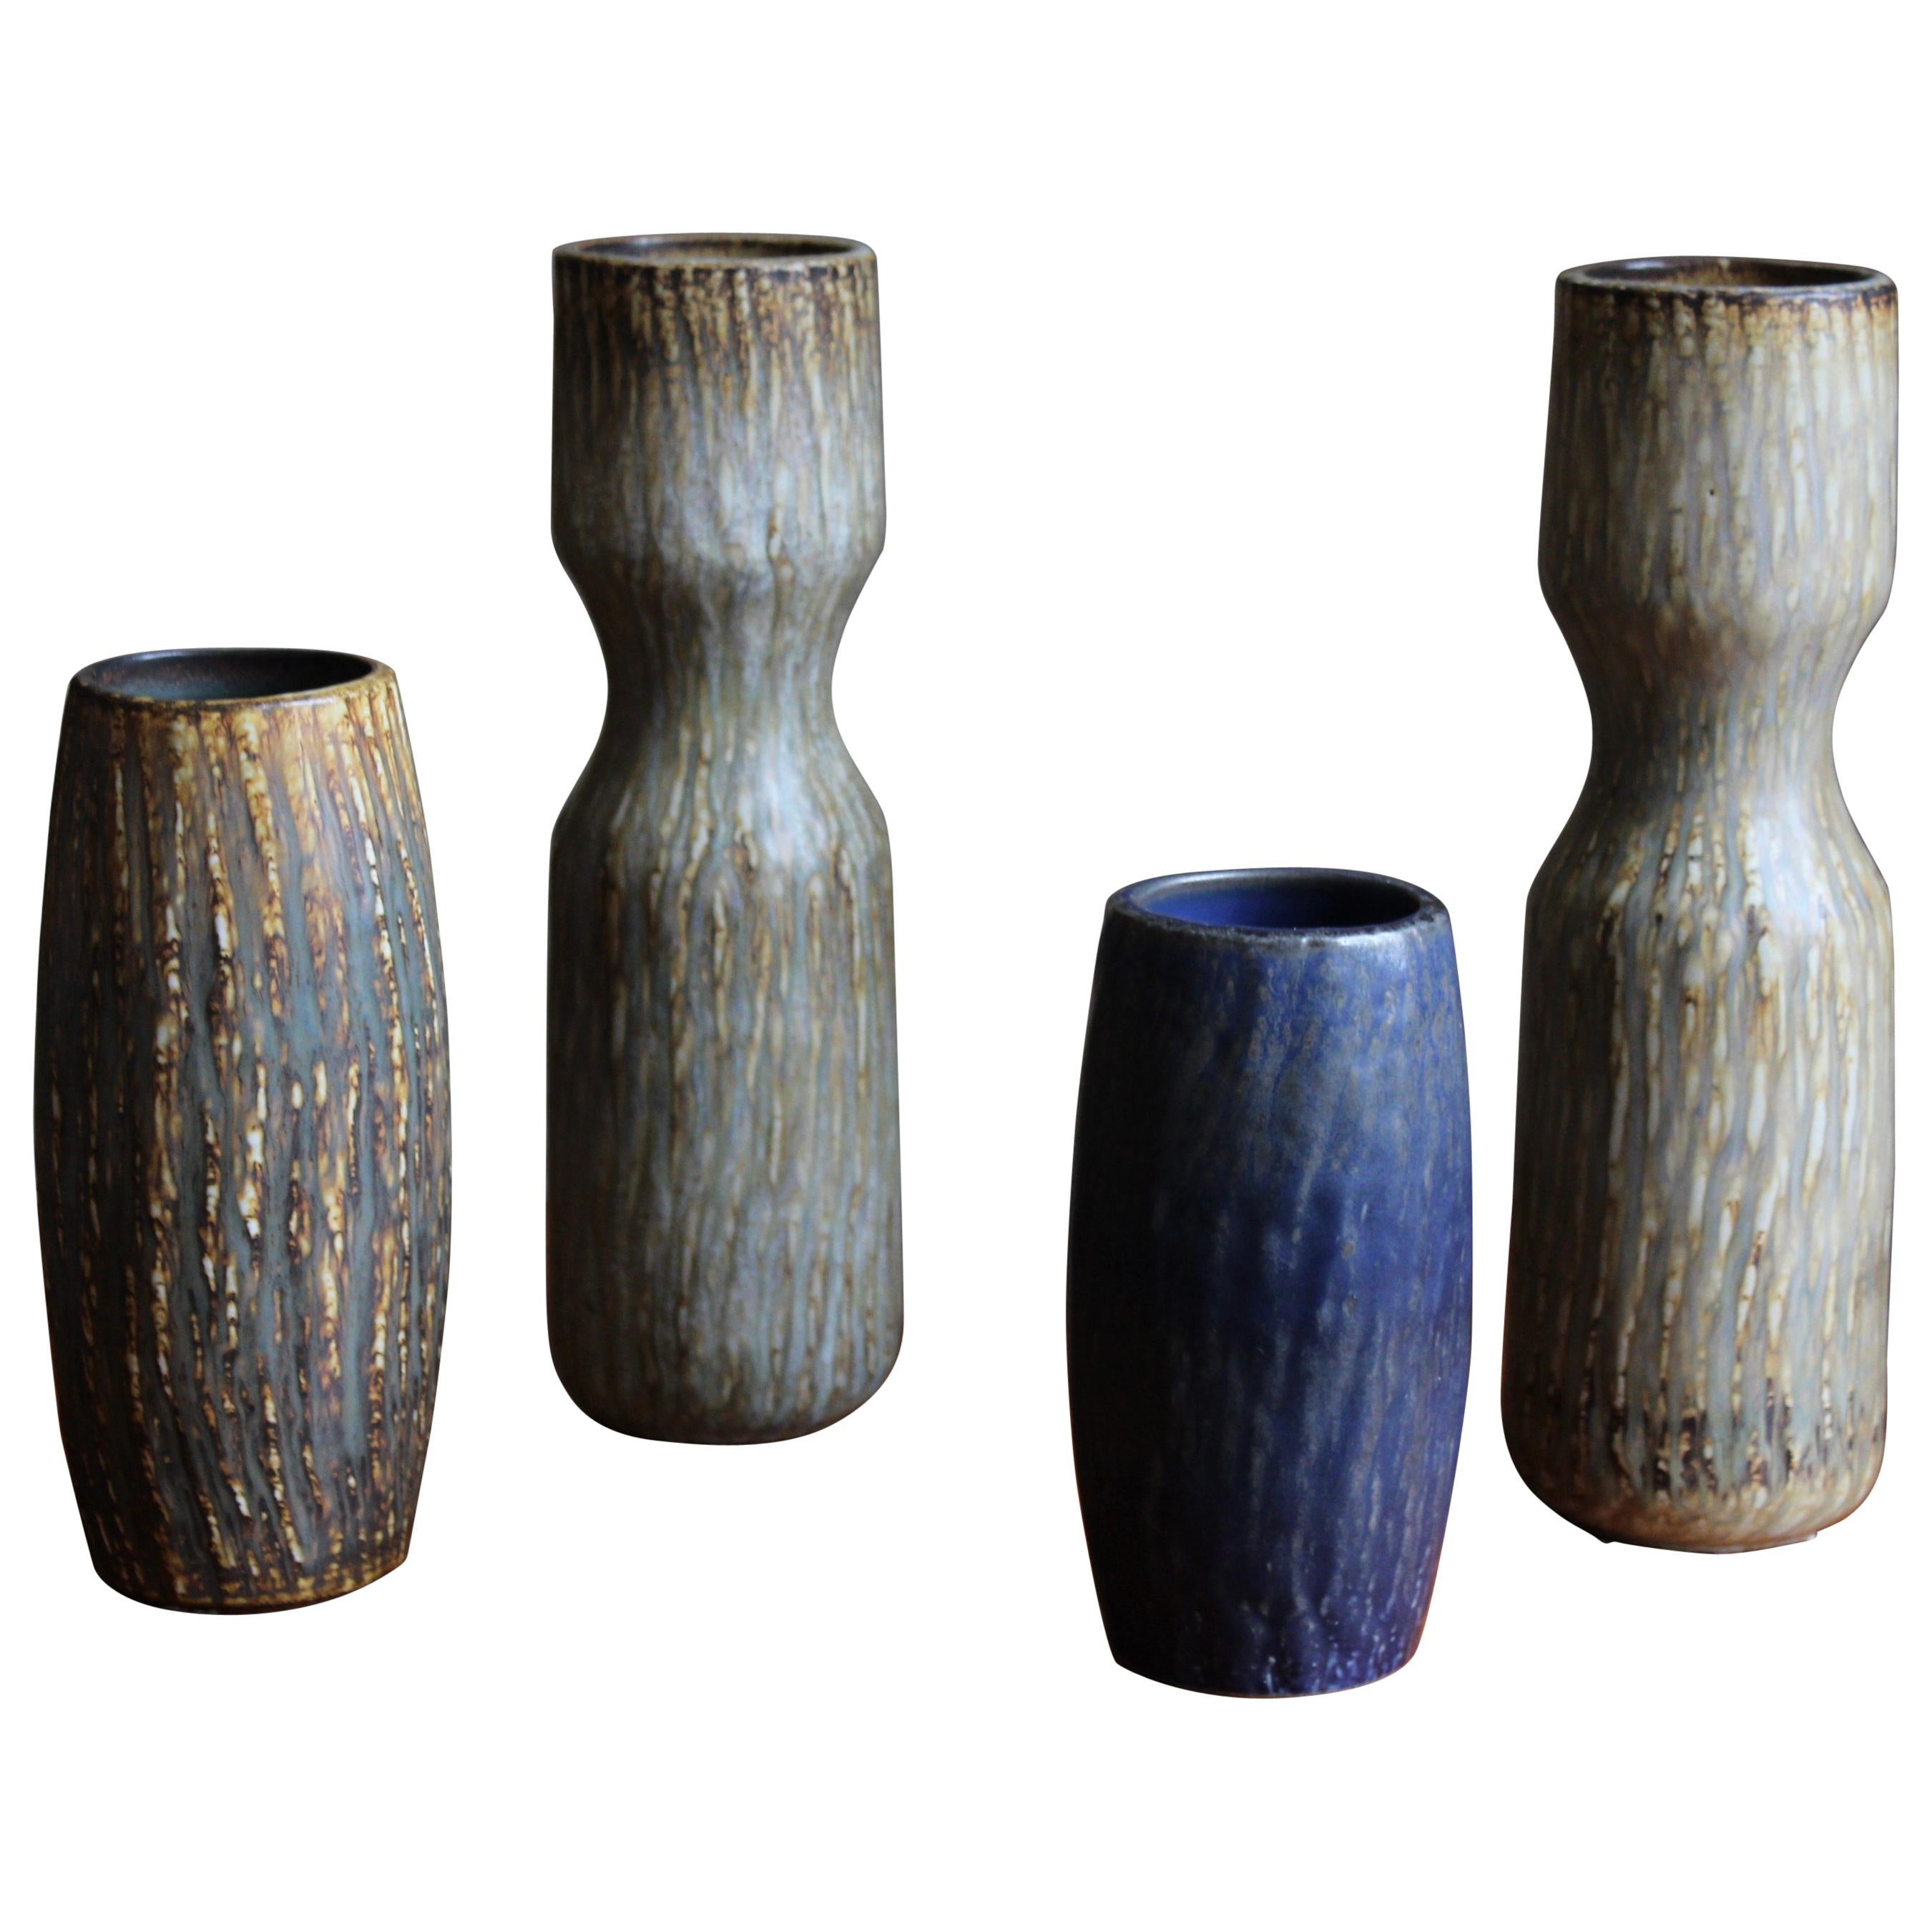 Gunnar Nylund, Sizable Vases, Glazed Stoneware, Rörstand, Sweden, 1950s